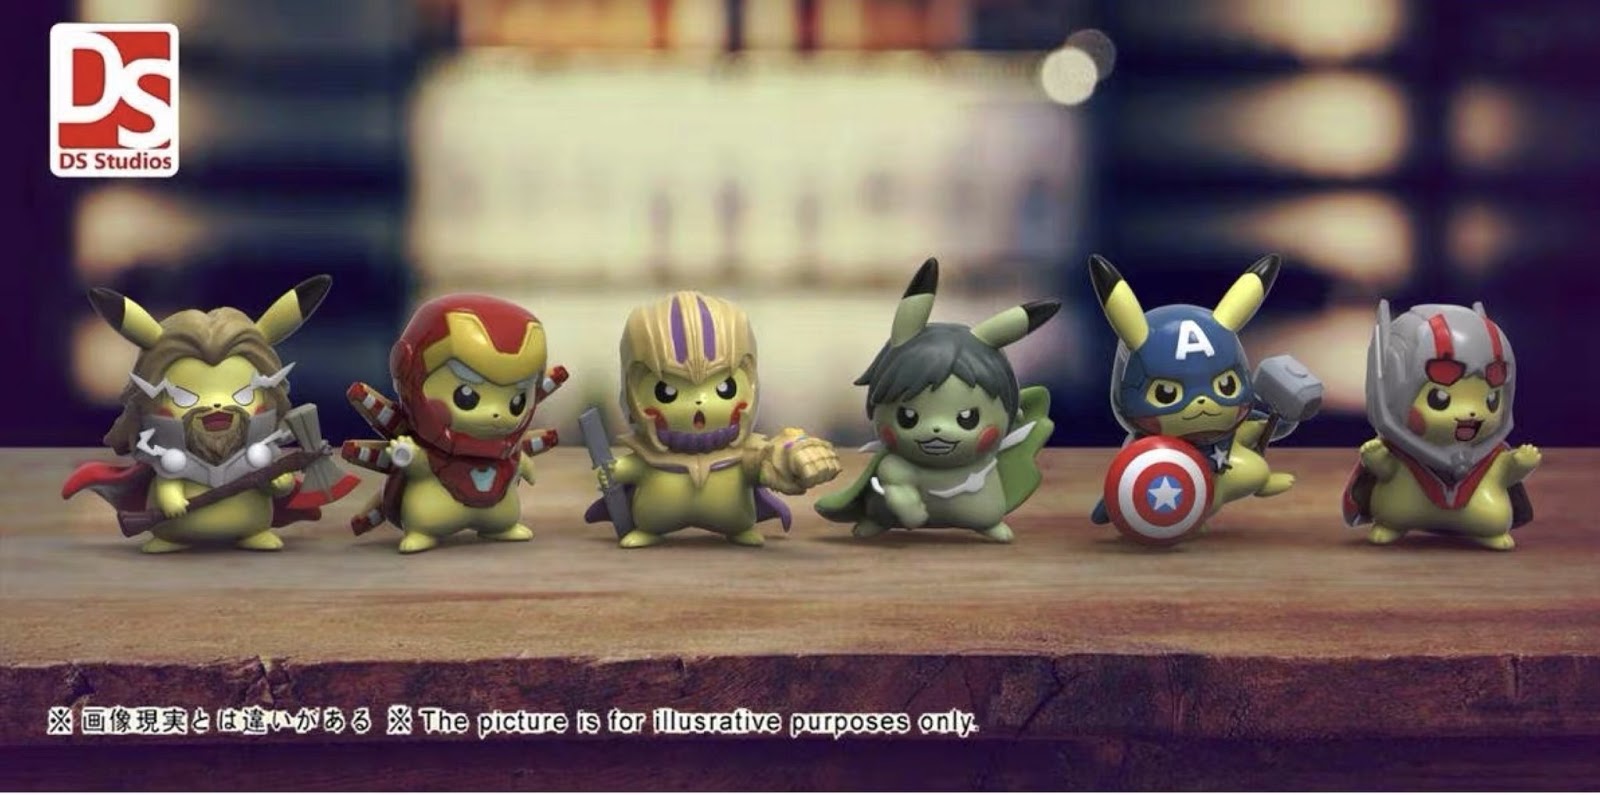 Pikachu Avengers By Ds Studios Spoilers For Avengersendgame